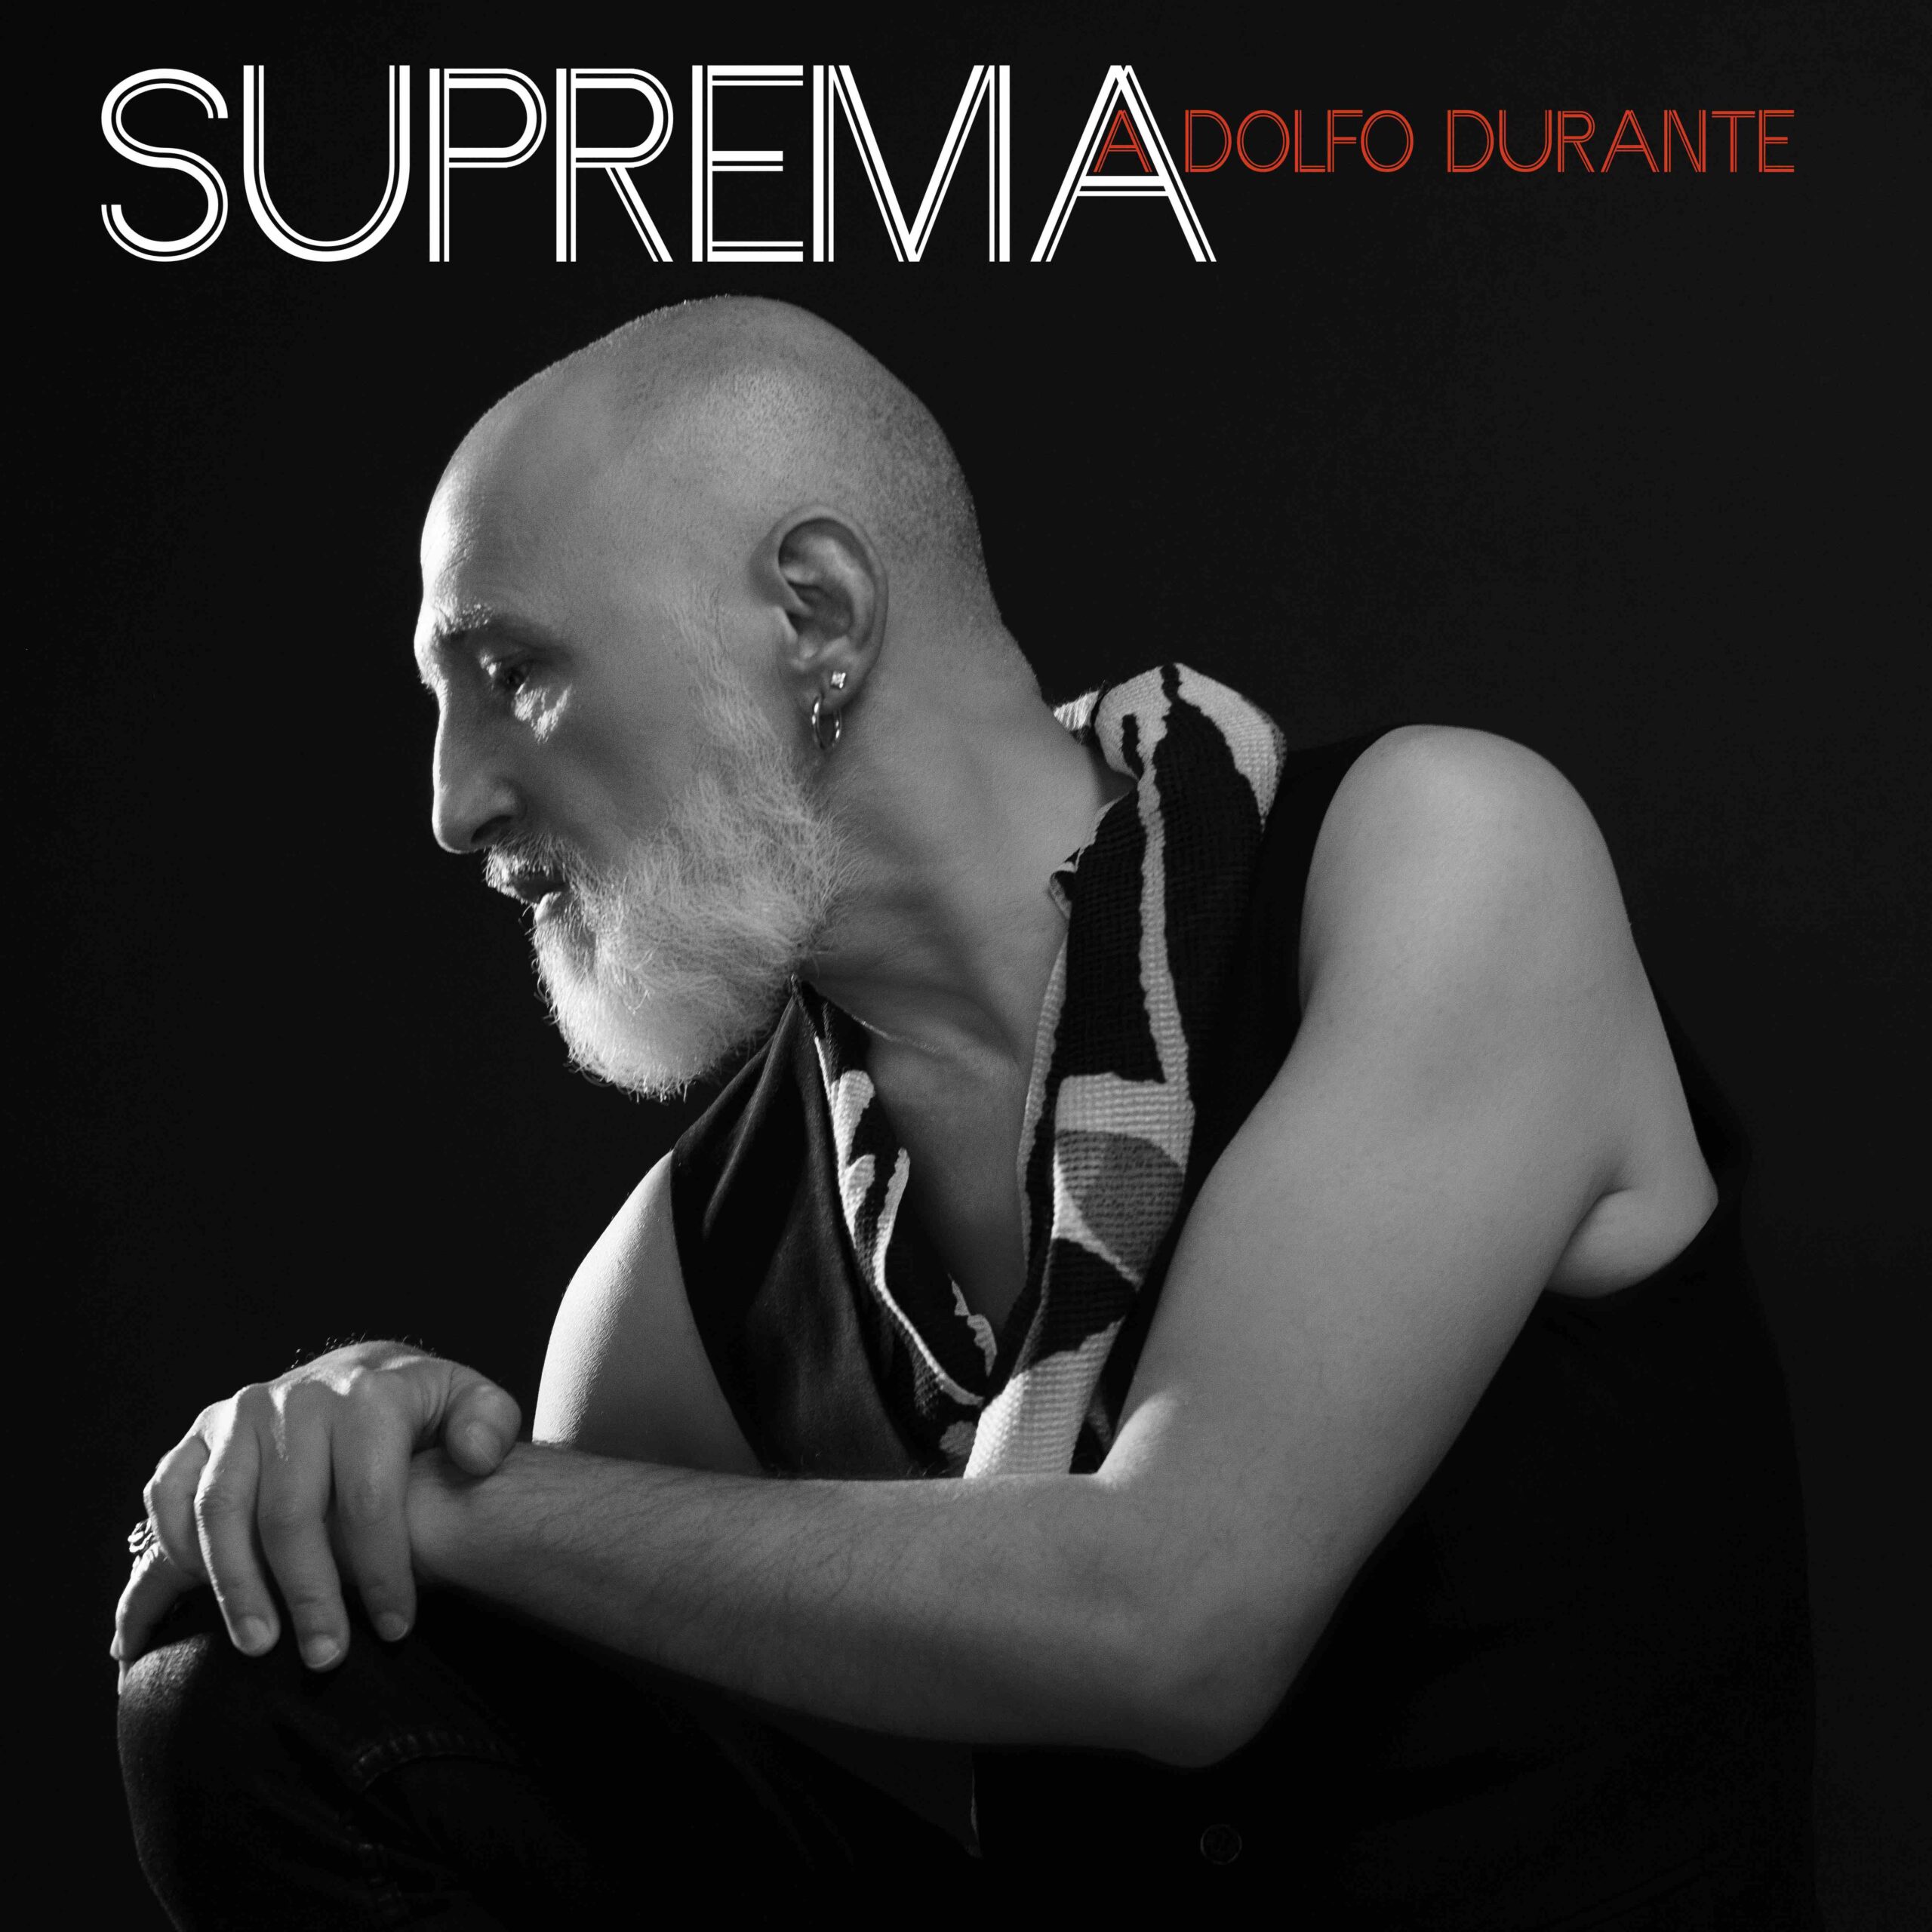 ADOLFO DURANTE uscito il 10 maggio con SUPREMA